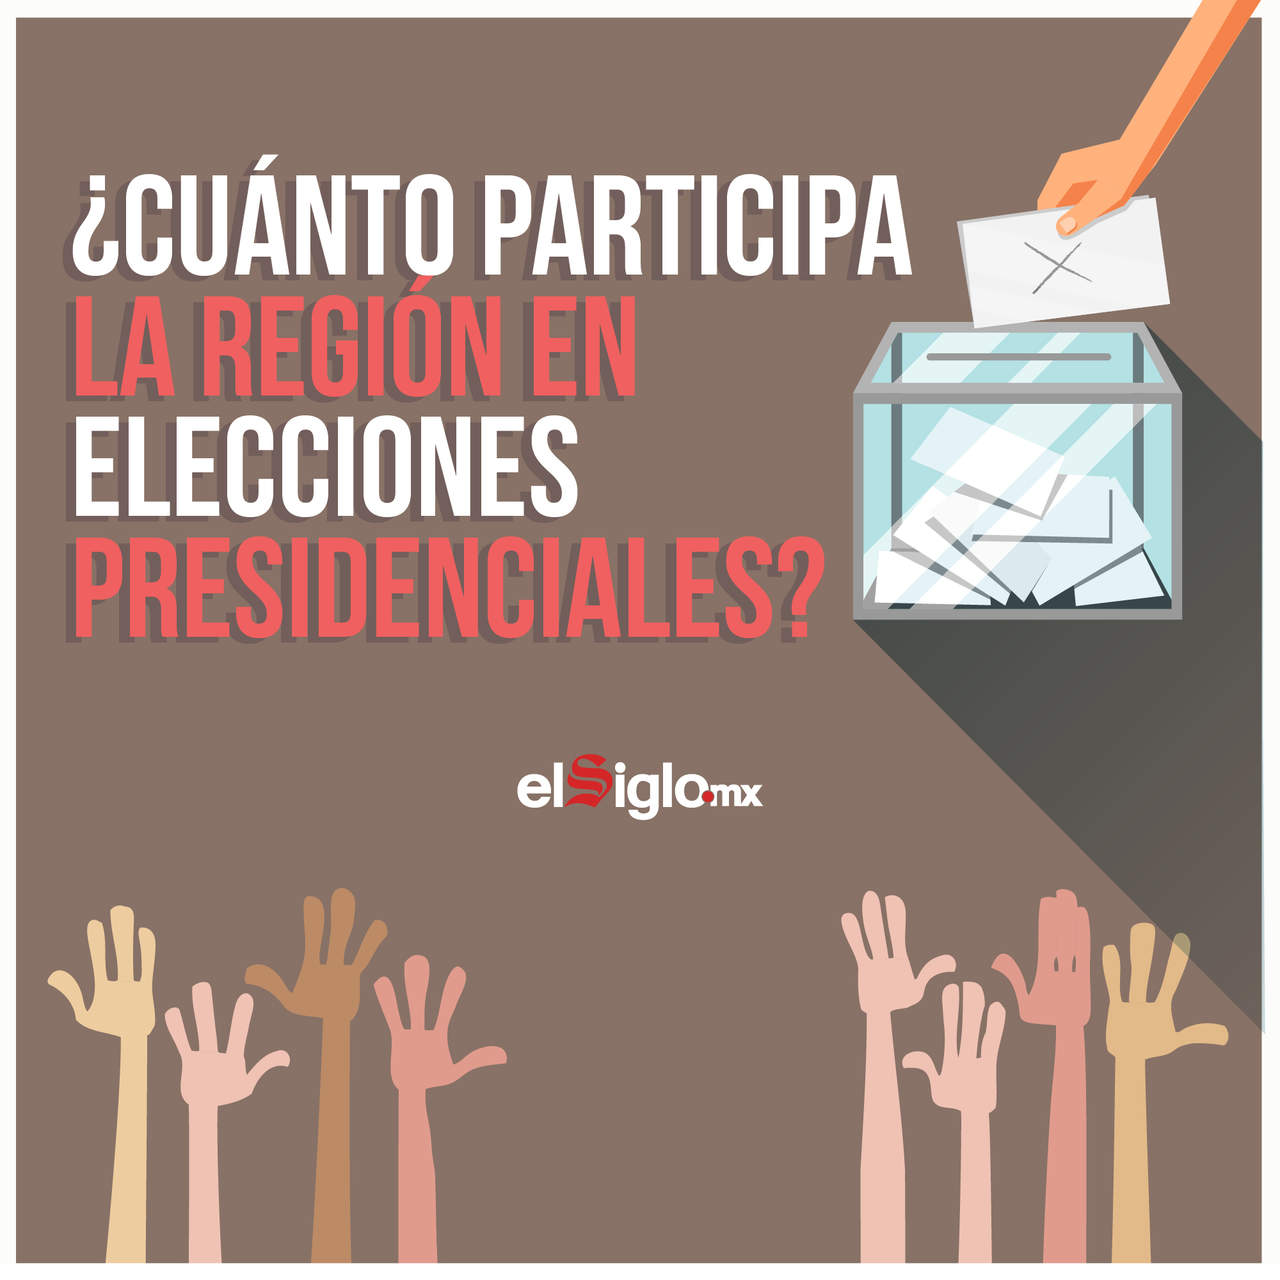 ¿Cuánto participa la región en elecciones presidenciales?